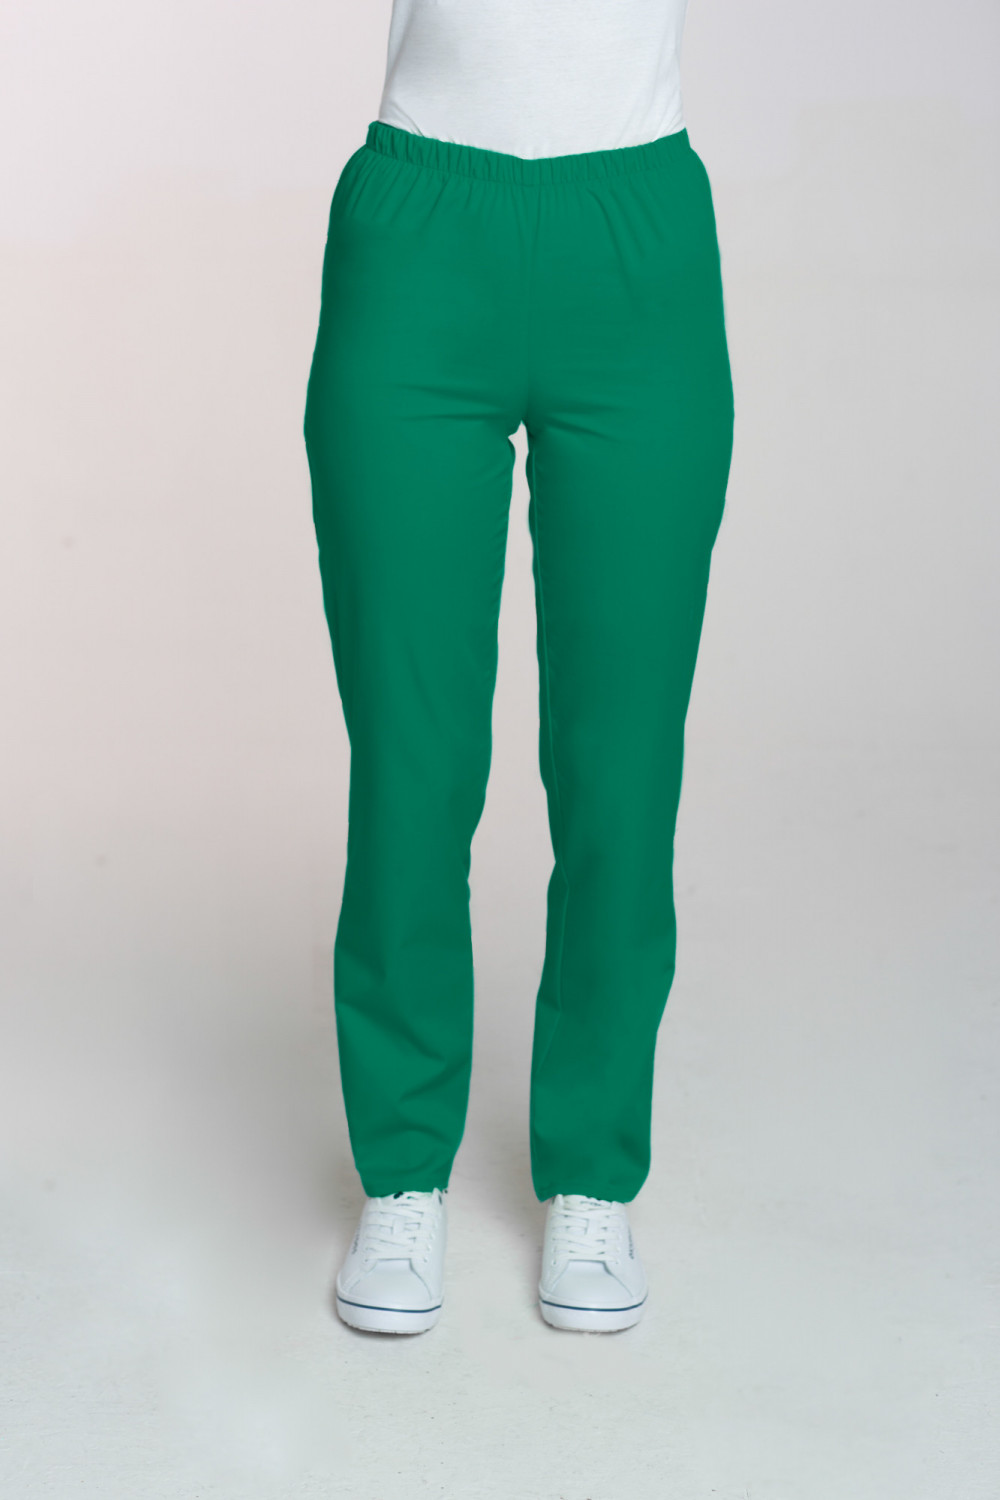 M-086 Spodnie damskie medyczne spodnie do pracy kolor trawa